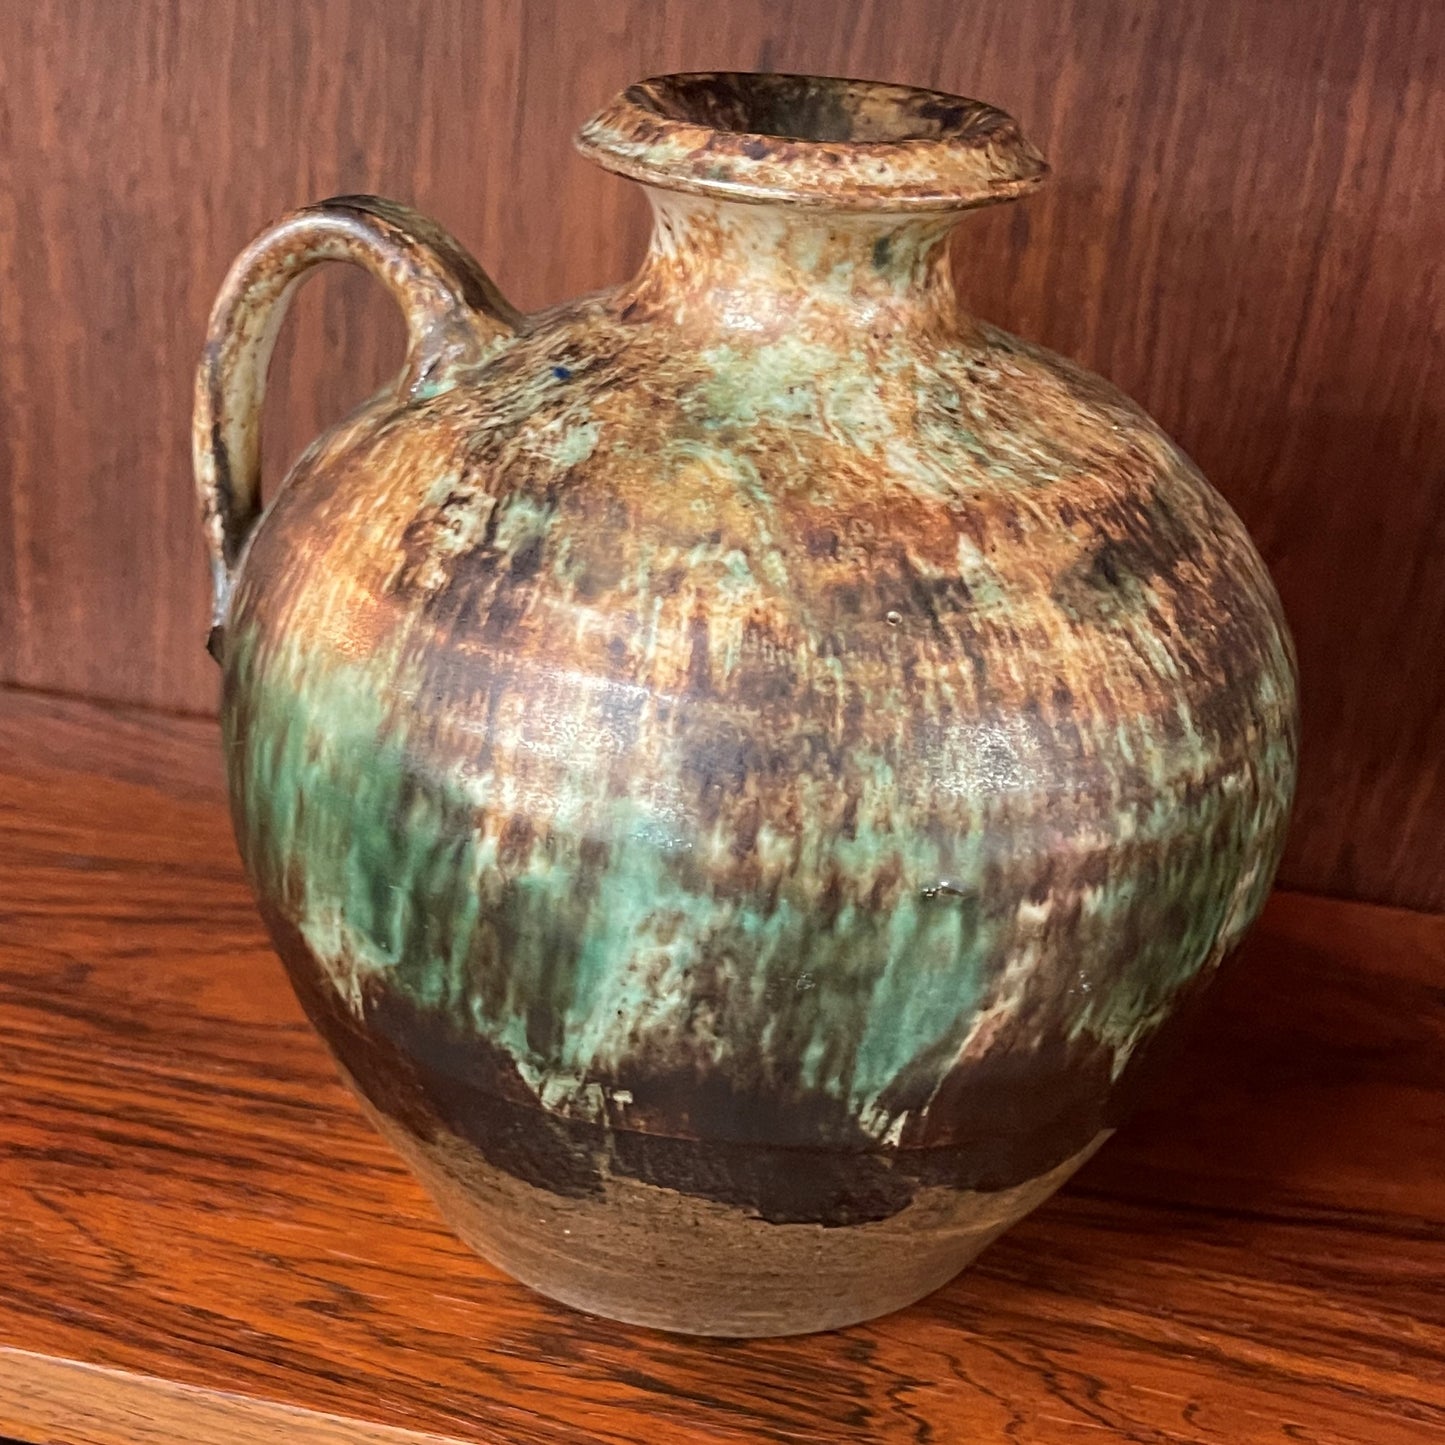 Etienne van Wonterghem Keramik vase med hank i smukke grønne og brune jordfarver